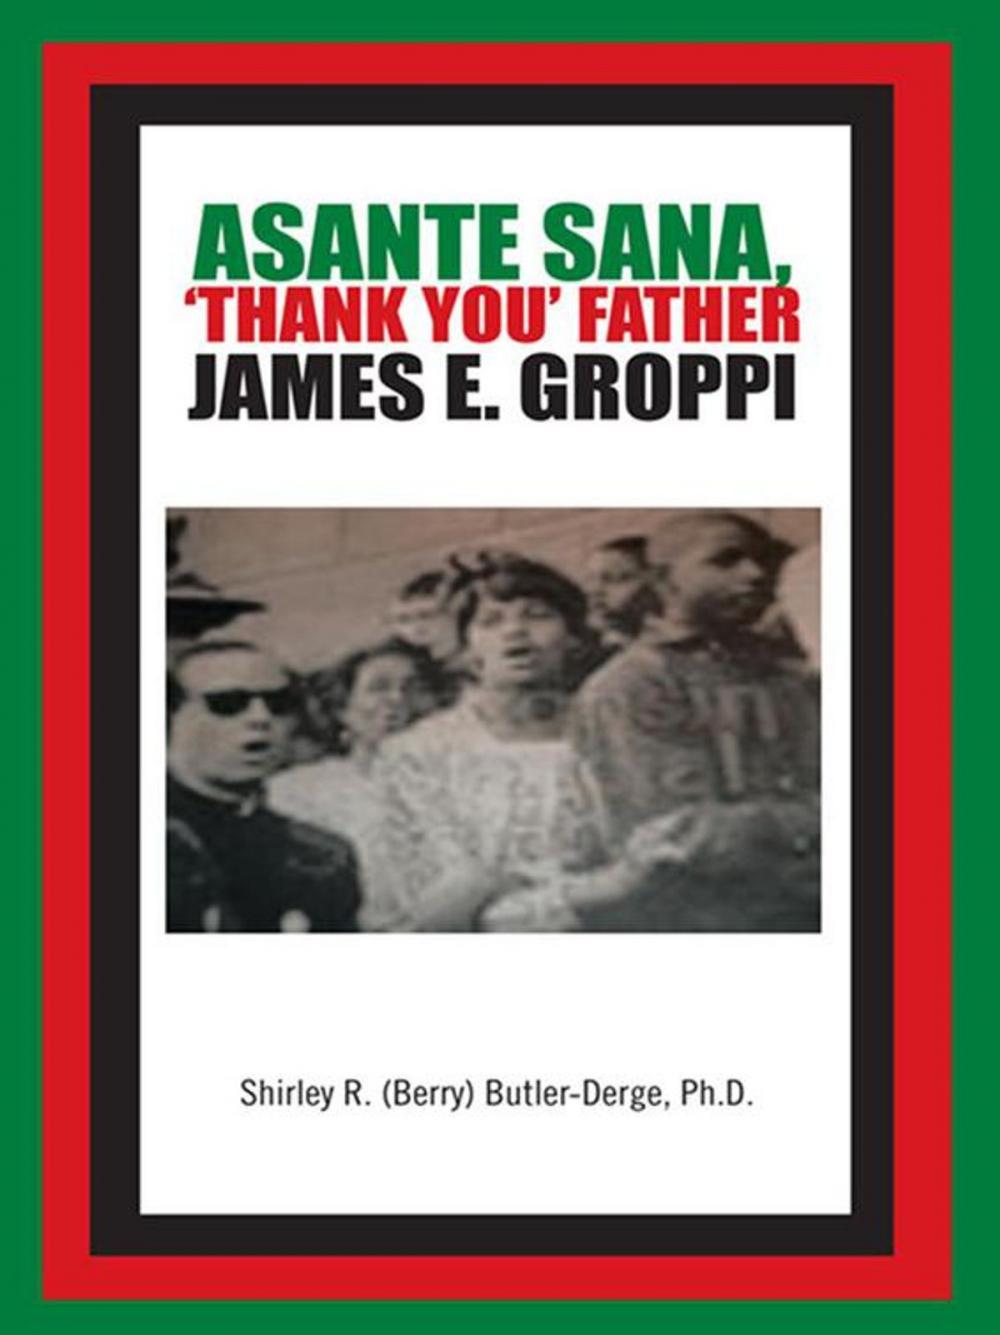 Big bigCover of Asante Sana, ‘Thank You’ Father James E. Groppi